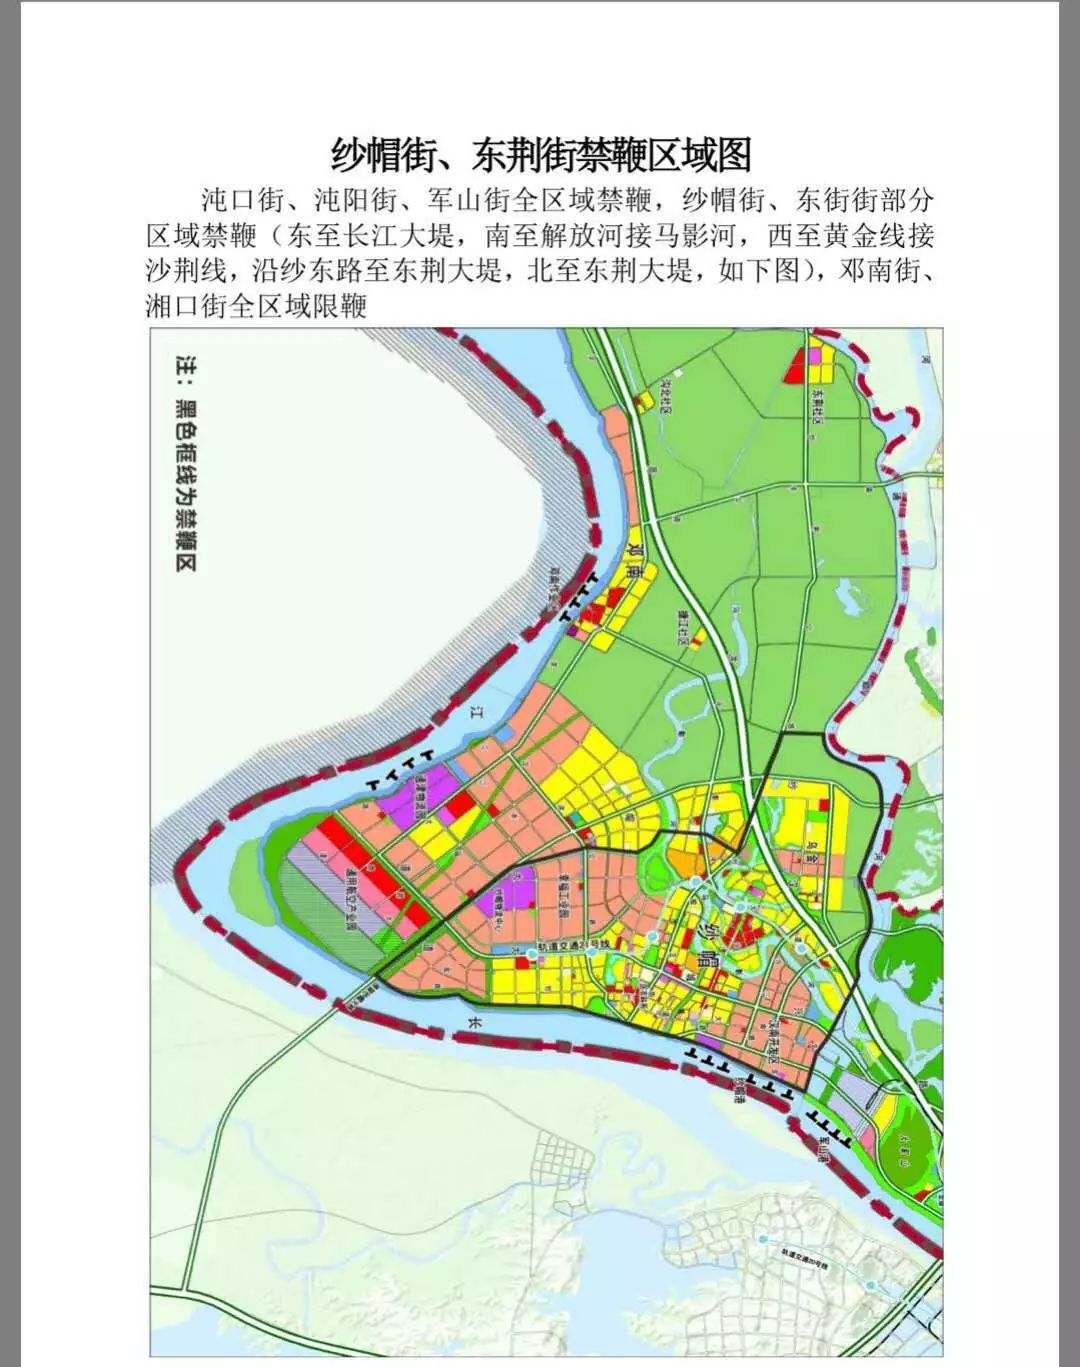 注意了武汉开发区汉南区部分区域禁止放鞭